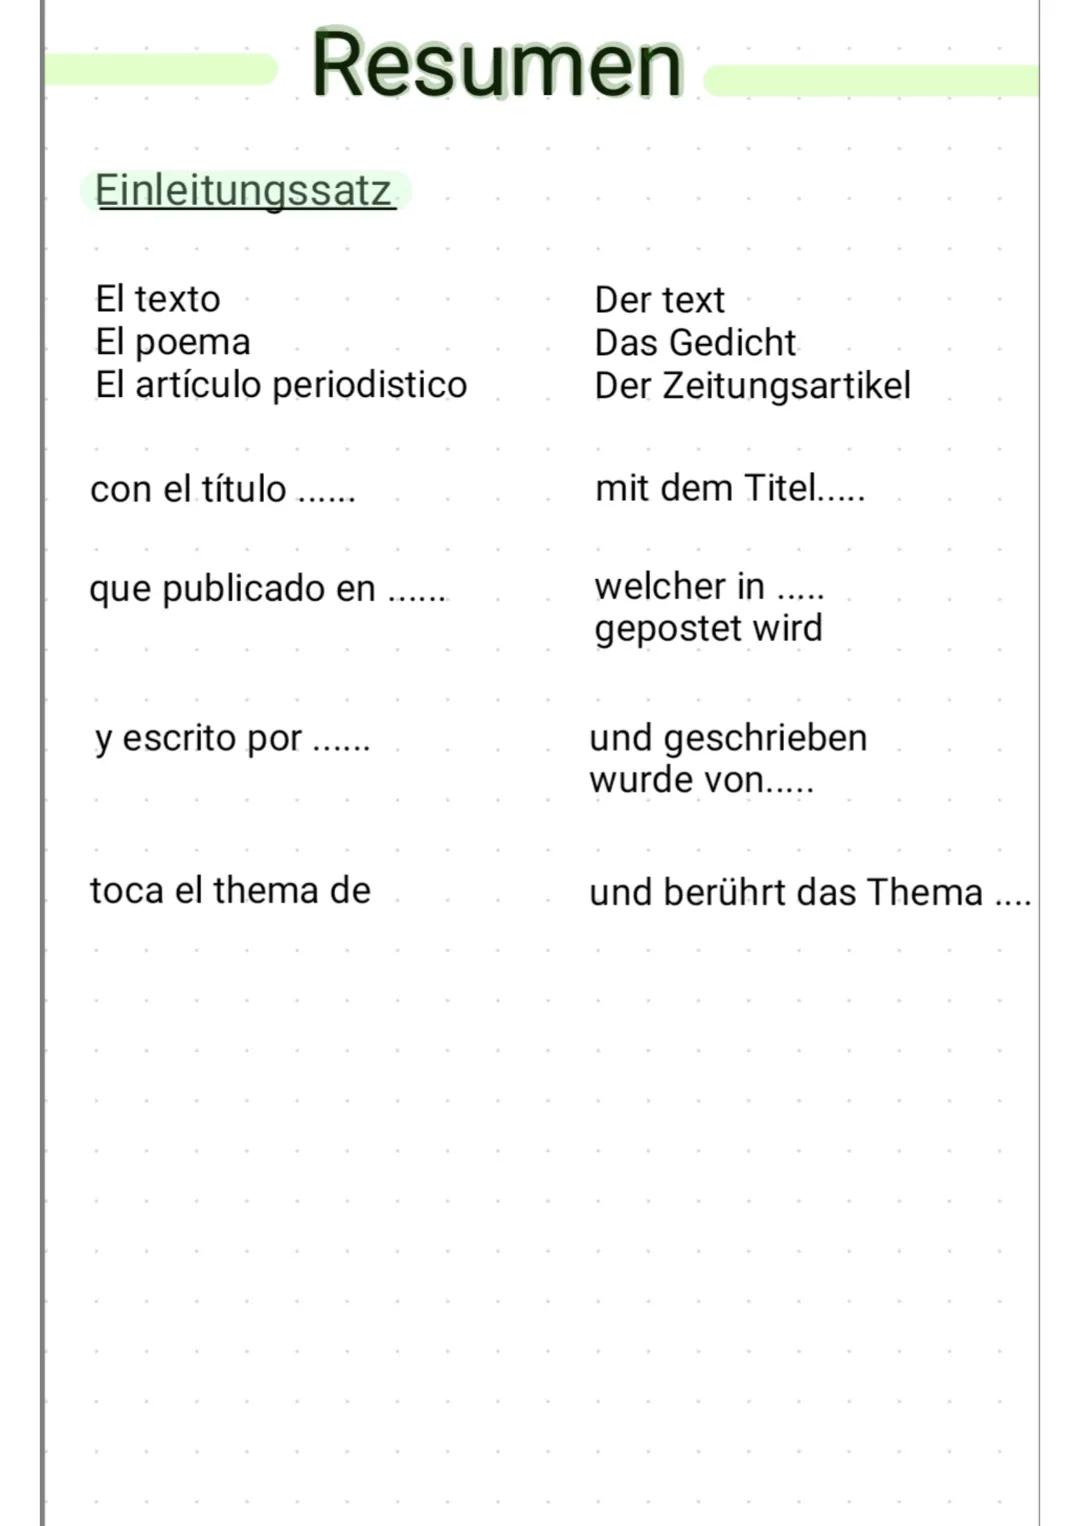 Resumen
Einleitungssatz
El texto
El poema
El artículo periodistico
con el título ......
que publicado en
y escrito por.
toca el thema de
Der